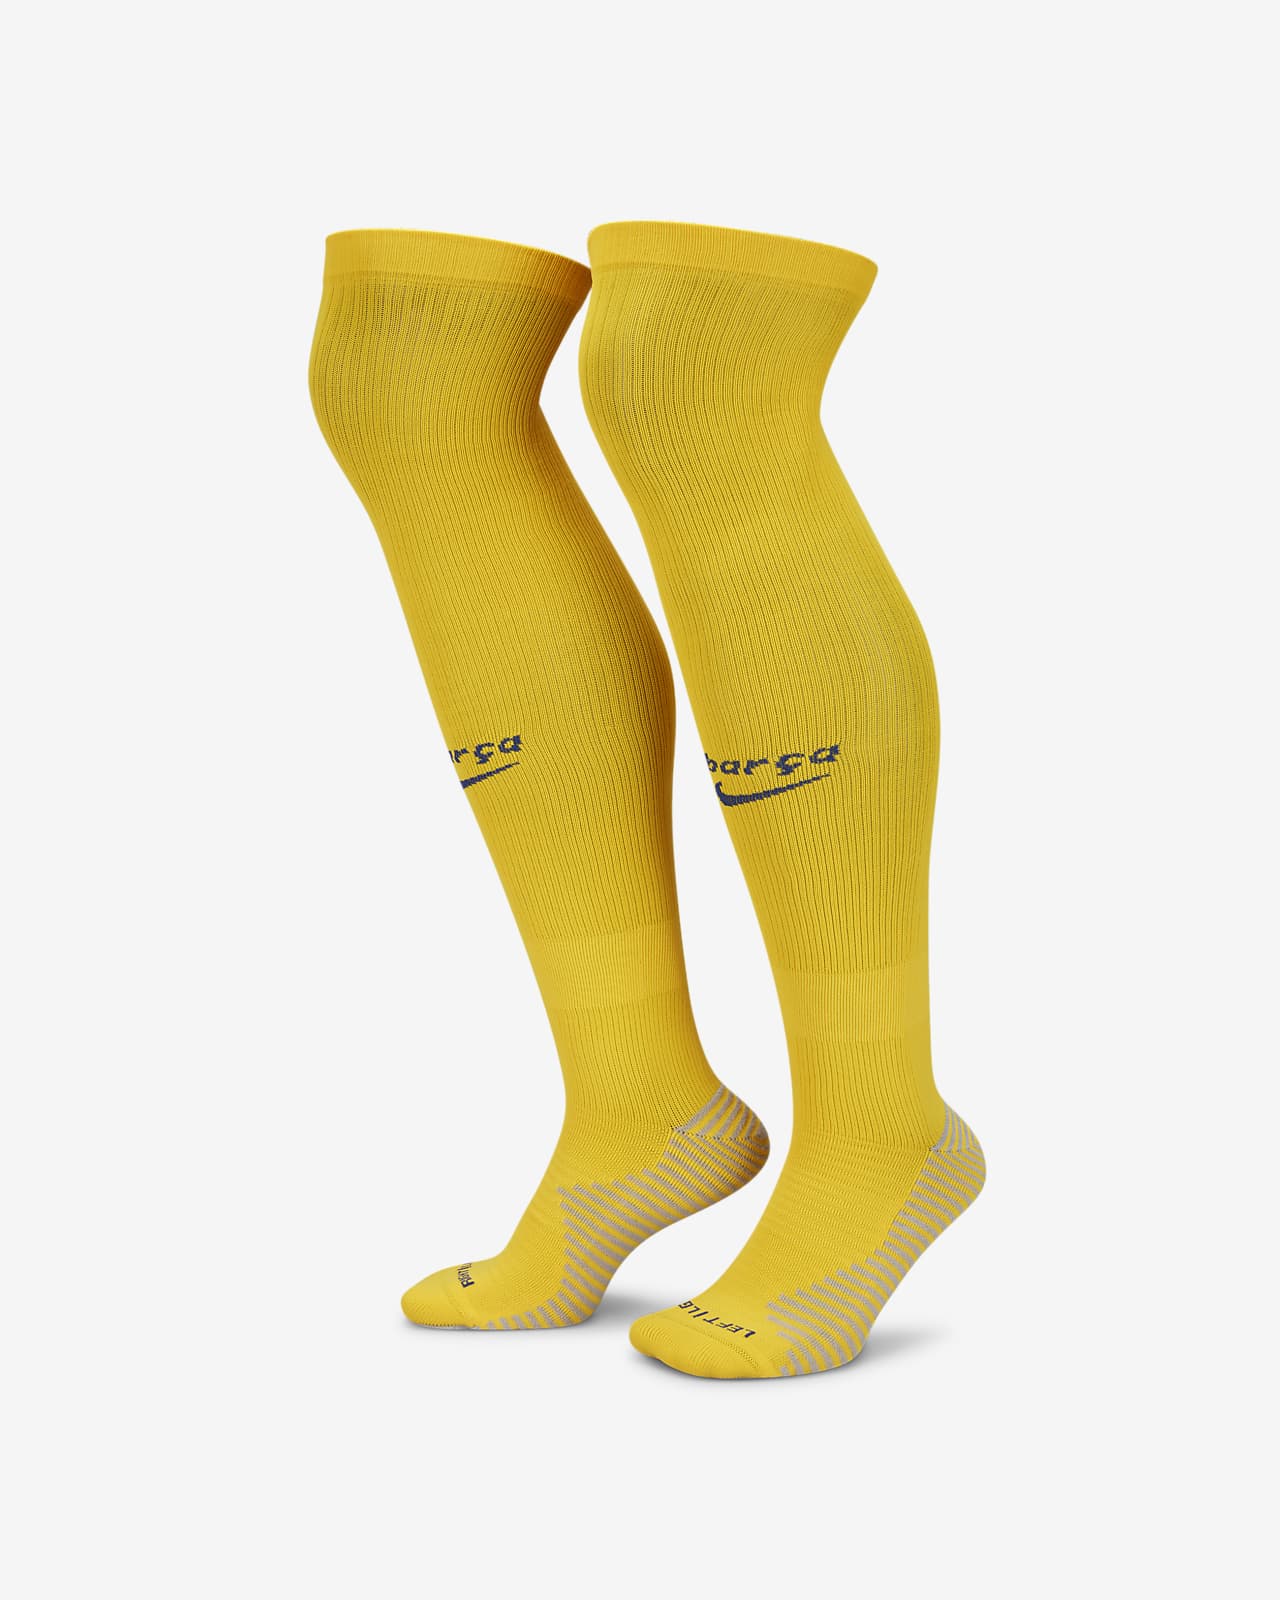 Ποδοσφαιρικές κάλτσες μέχρι το γόνατο δεύτερης εναλλακτικής εμφάνισης Μπαρτσελόνα Strike (ένα ζευγάρι)